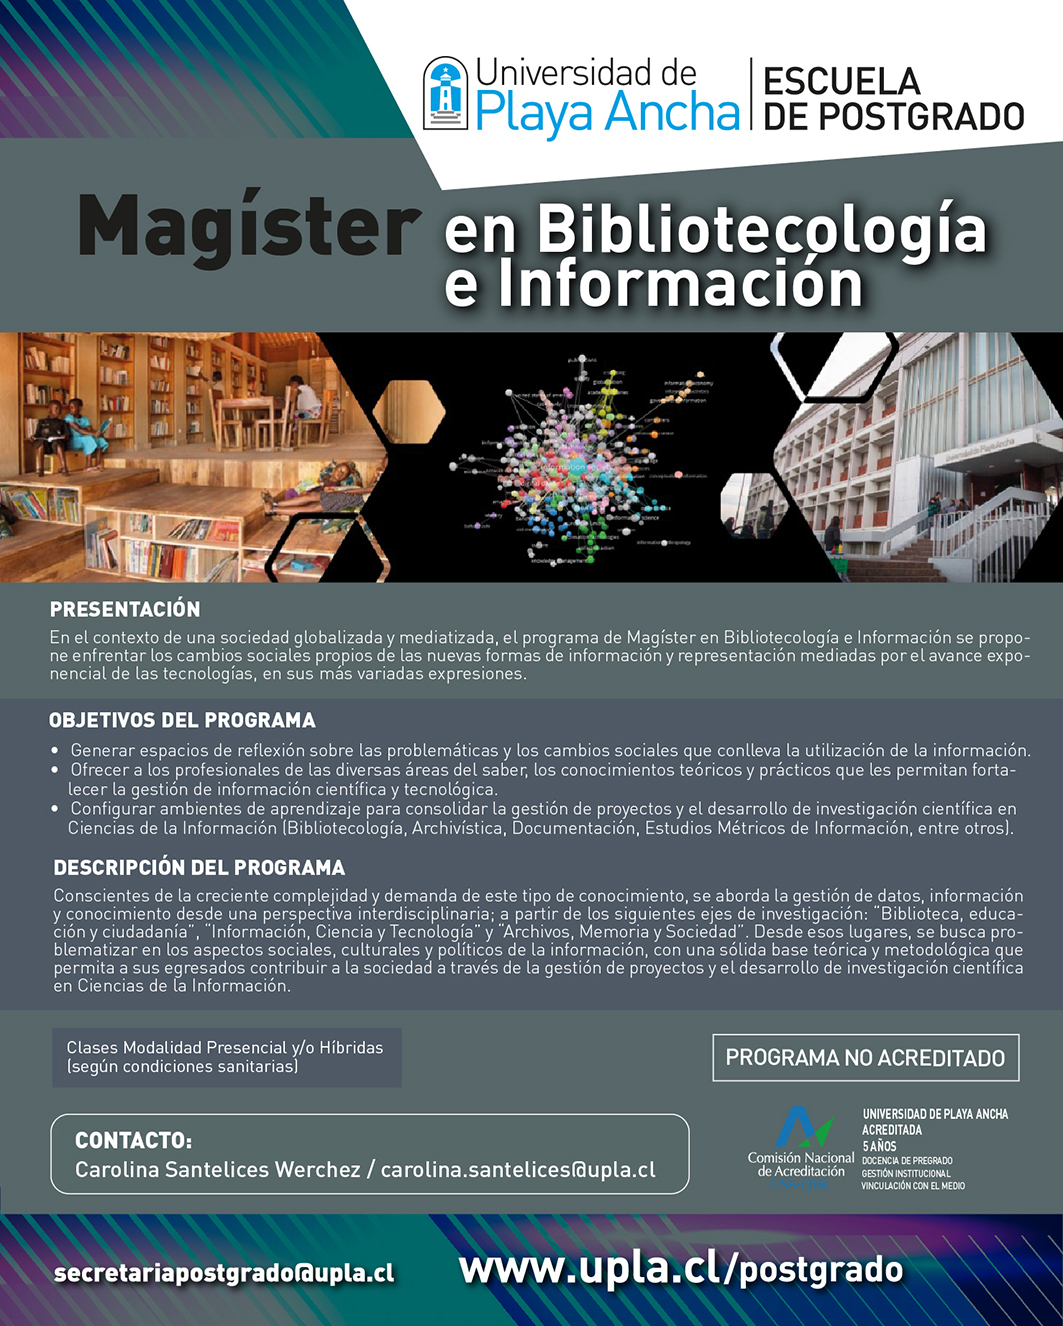 Magíster en Bibliotecología e Información UPLA